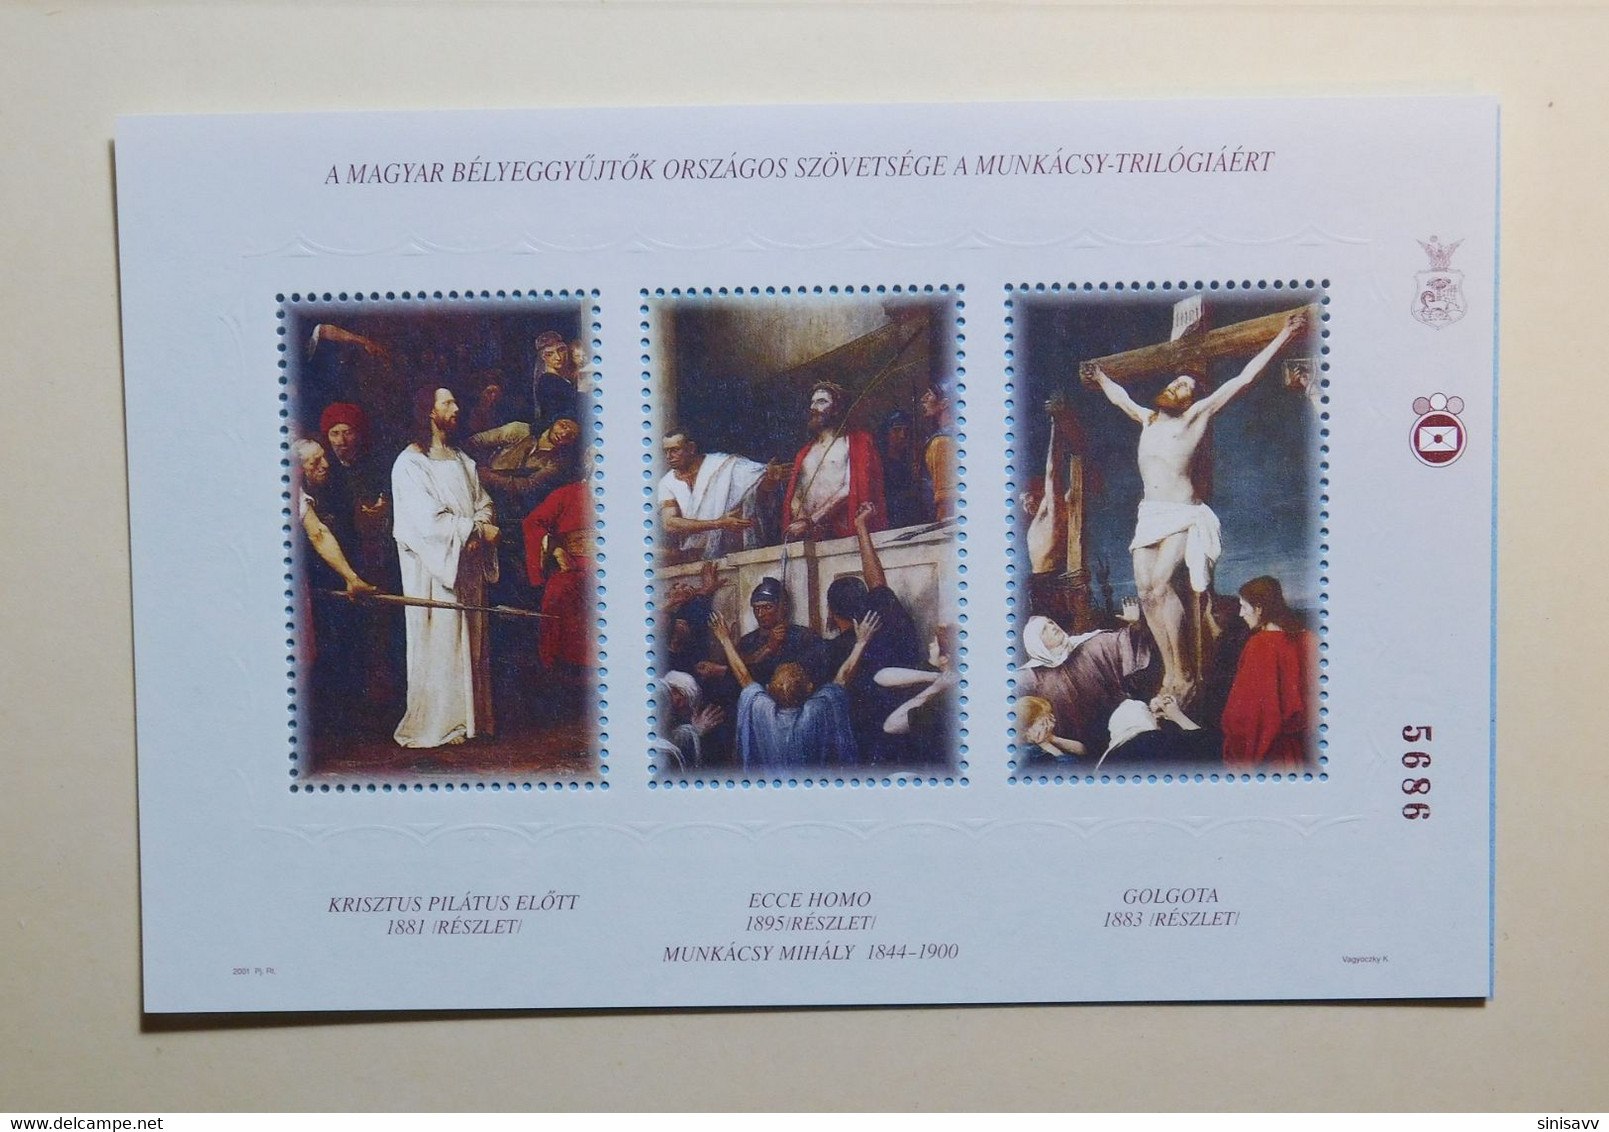 Hungary - 2001 - Munkacsy - Jesus Trilogy 1 - Memorial Commemorative Sheet - MNH - Hojas Conmemorativas